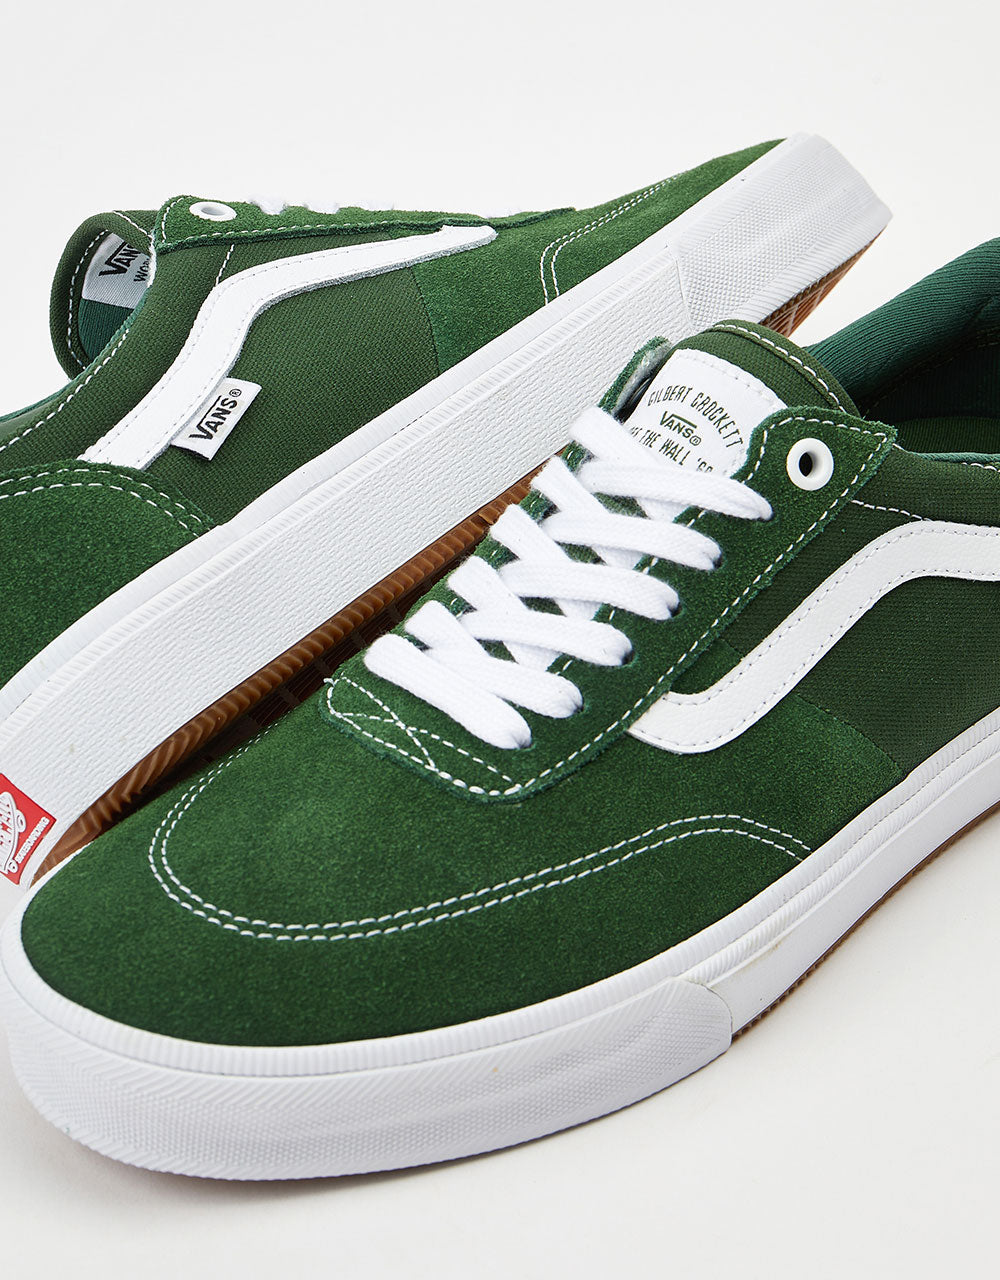 Vans Gilbert Crockett Skate Shoes - Green/White